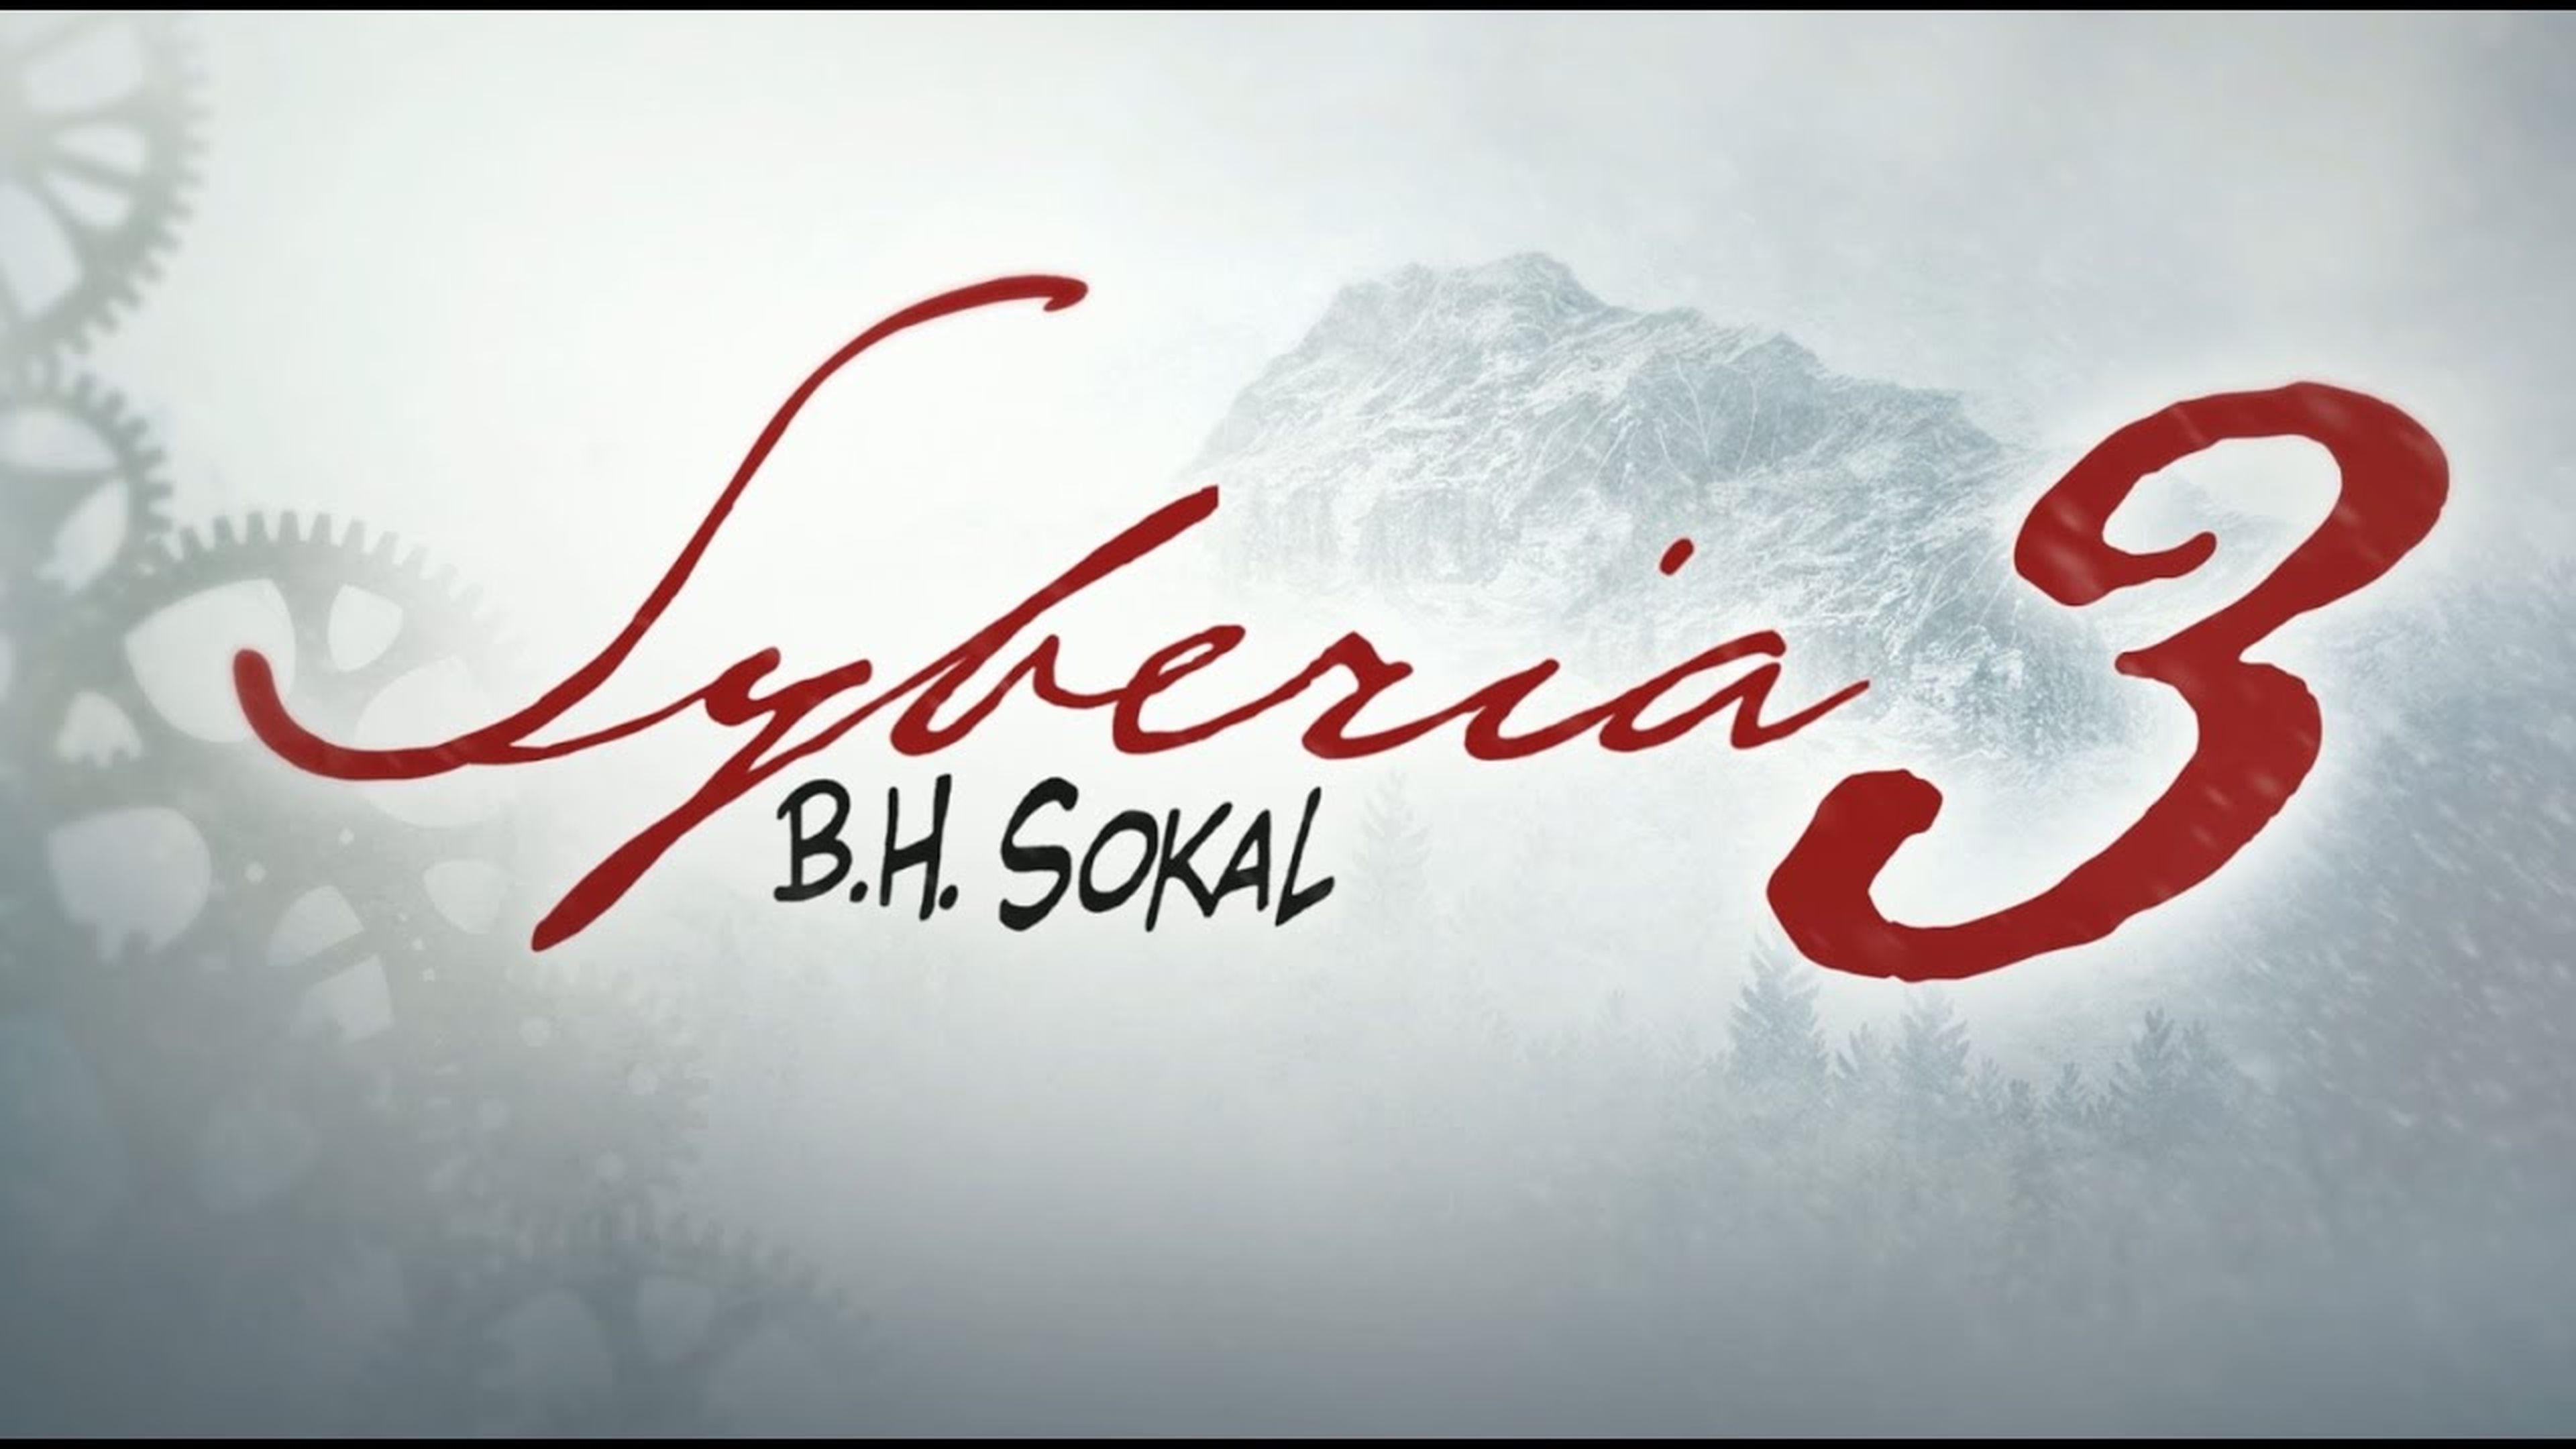 Syberia 3 - Tráiler de lanzamiento en inglés